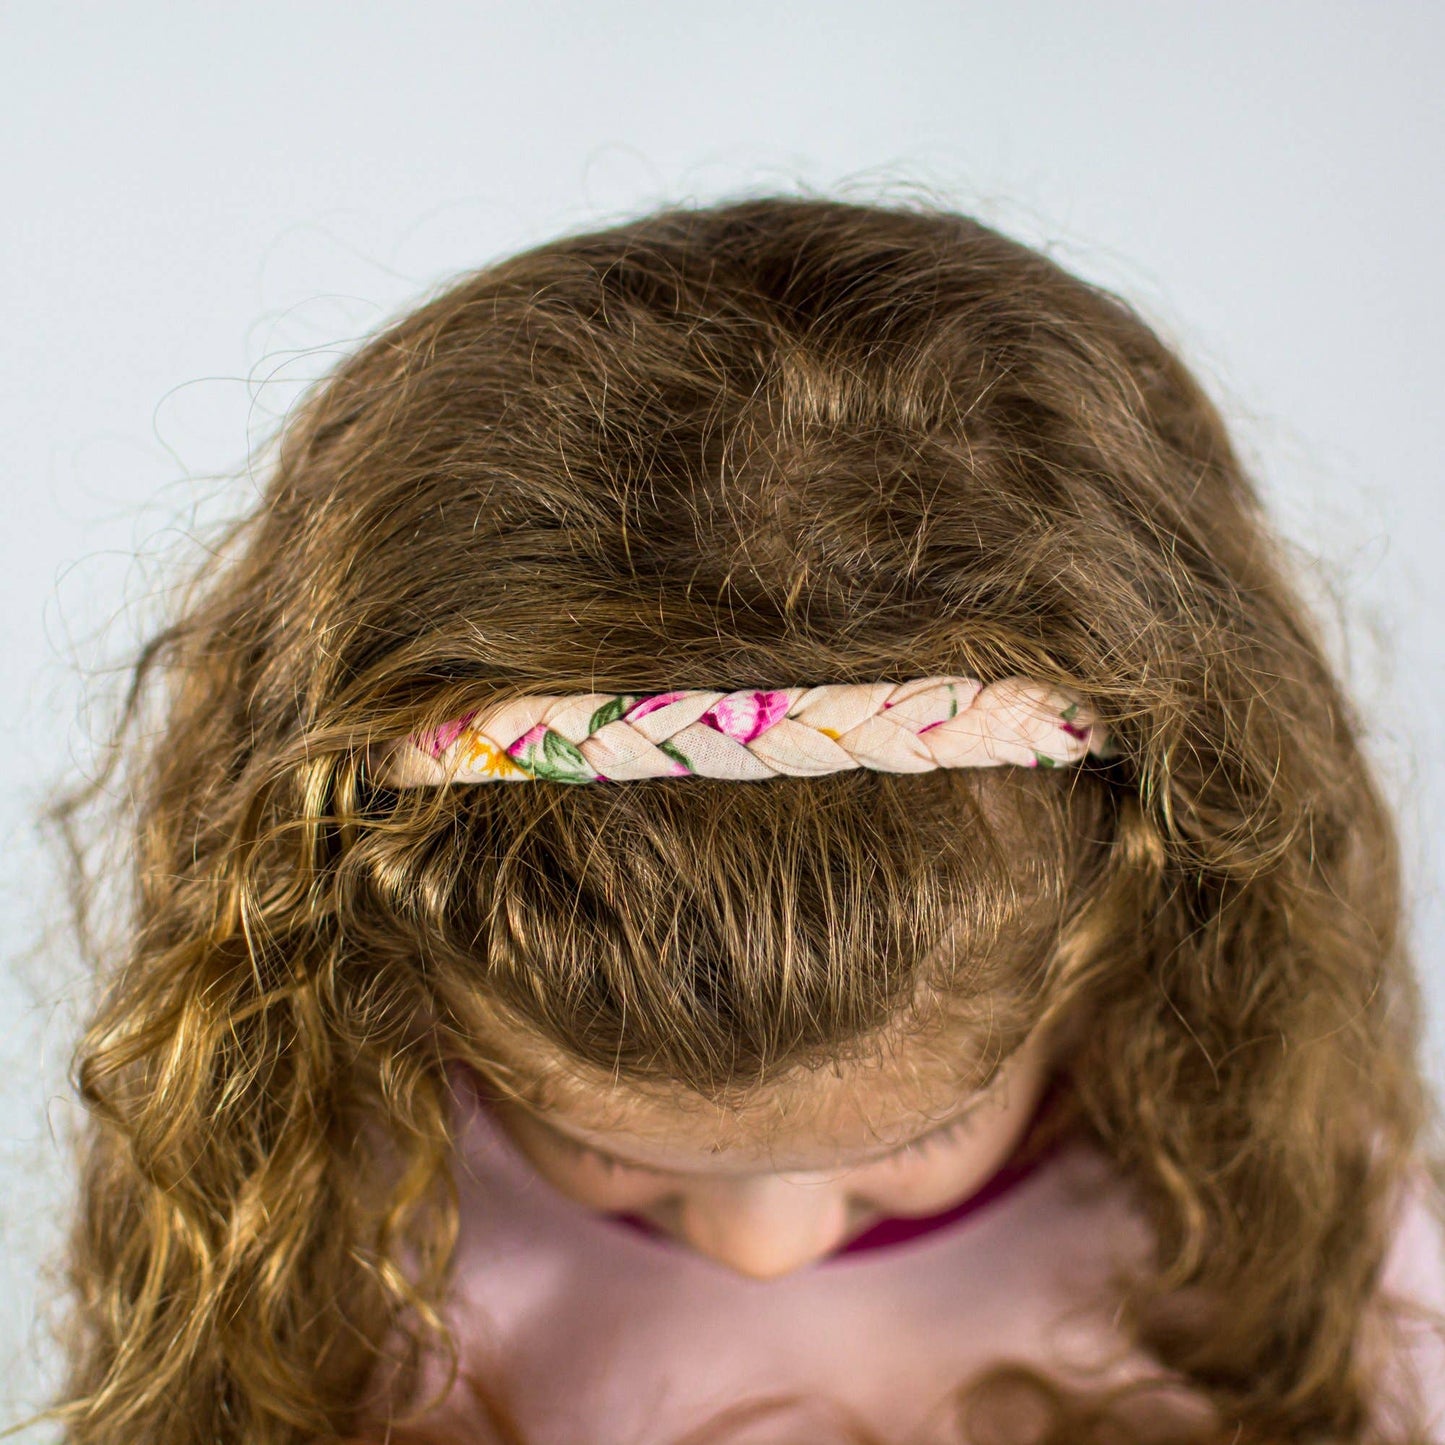 Adjustable Floral Braided Headband - Light Pink